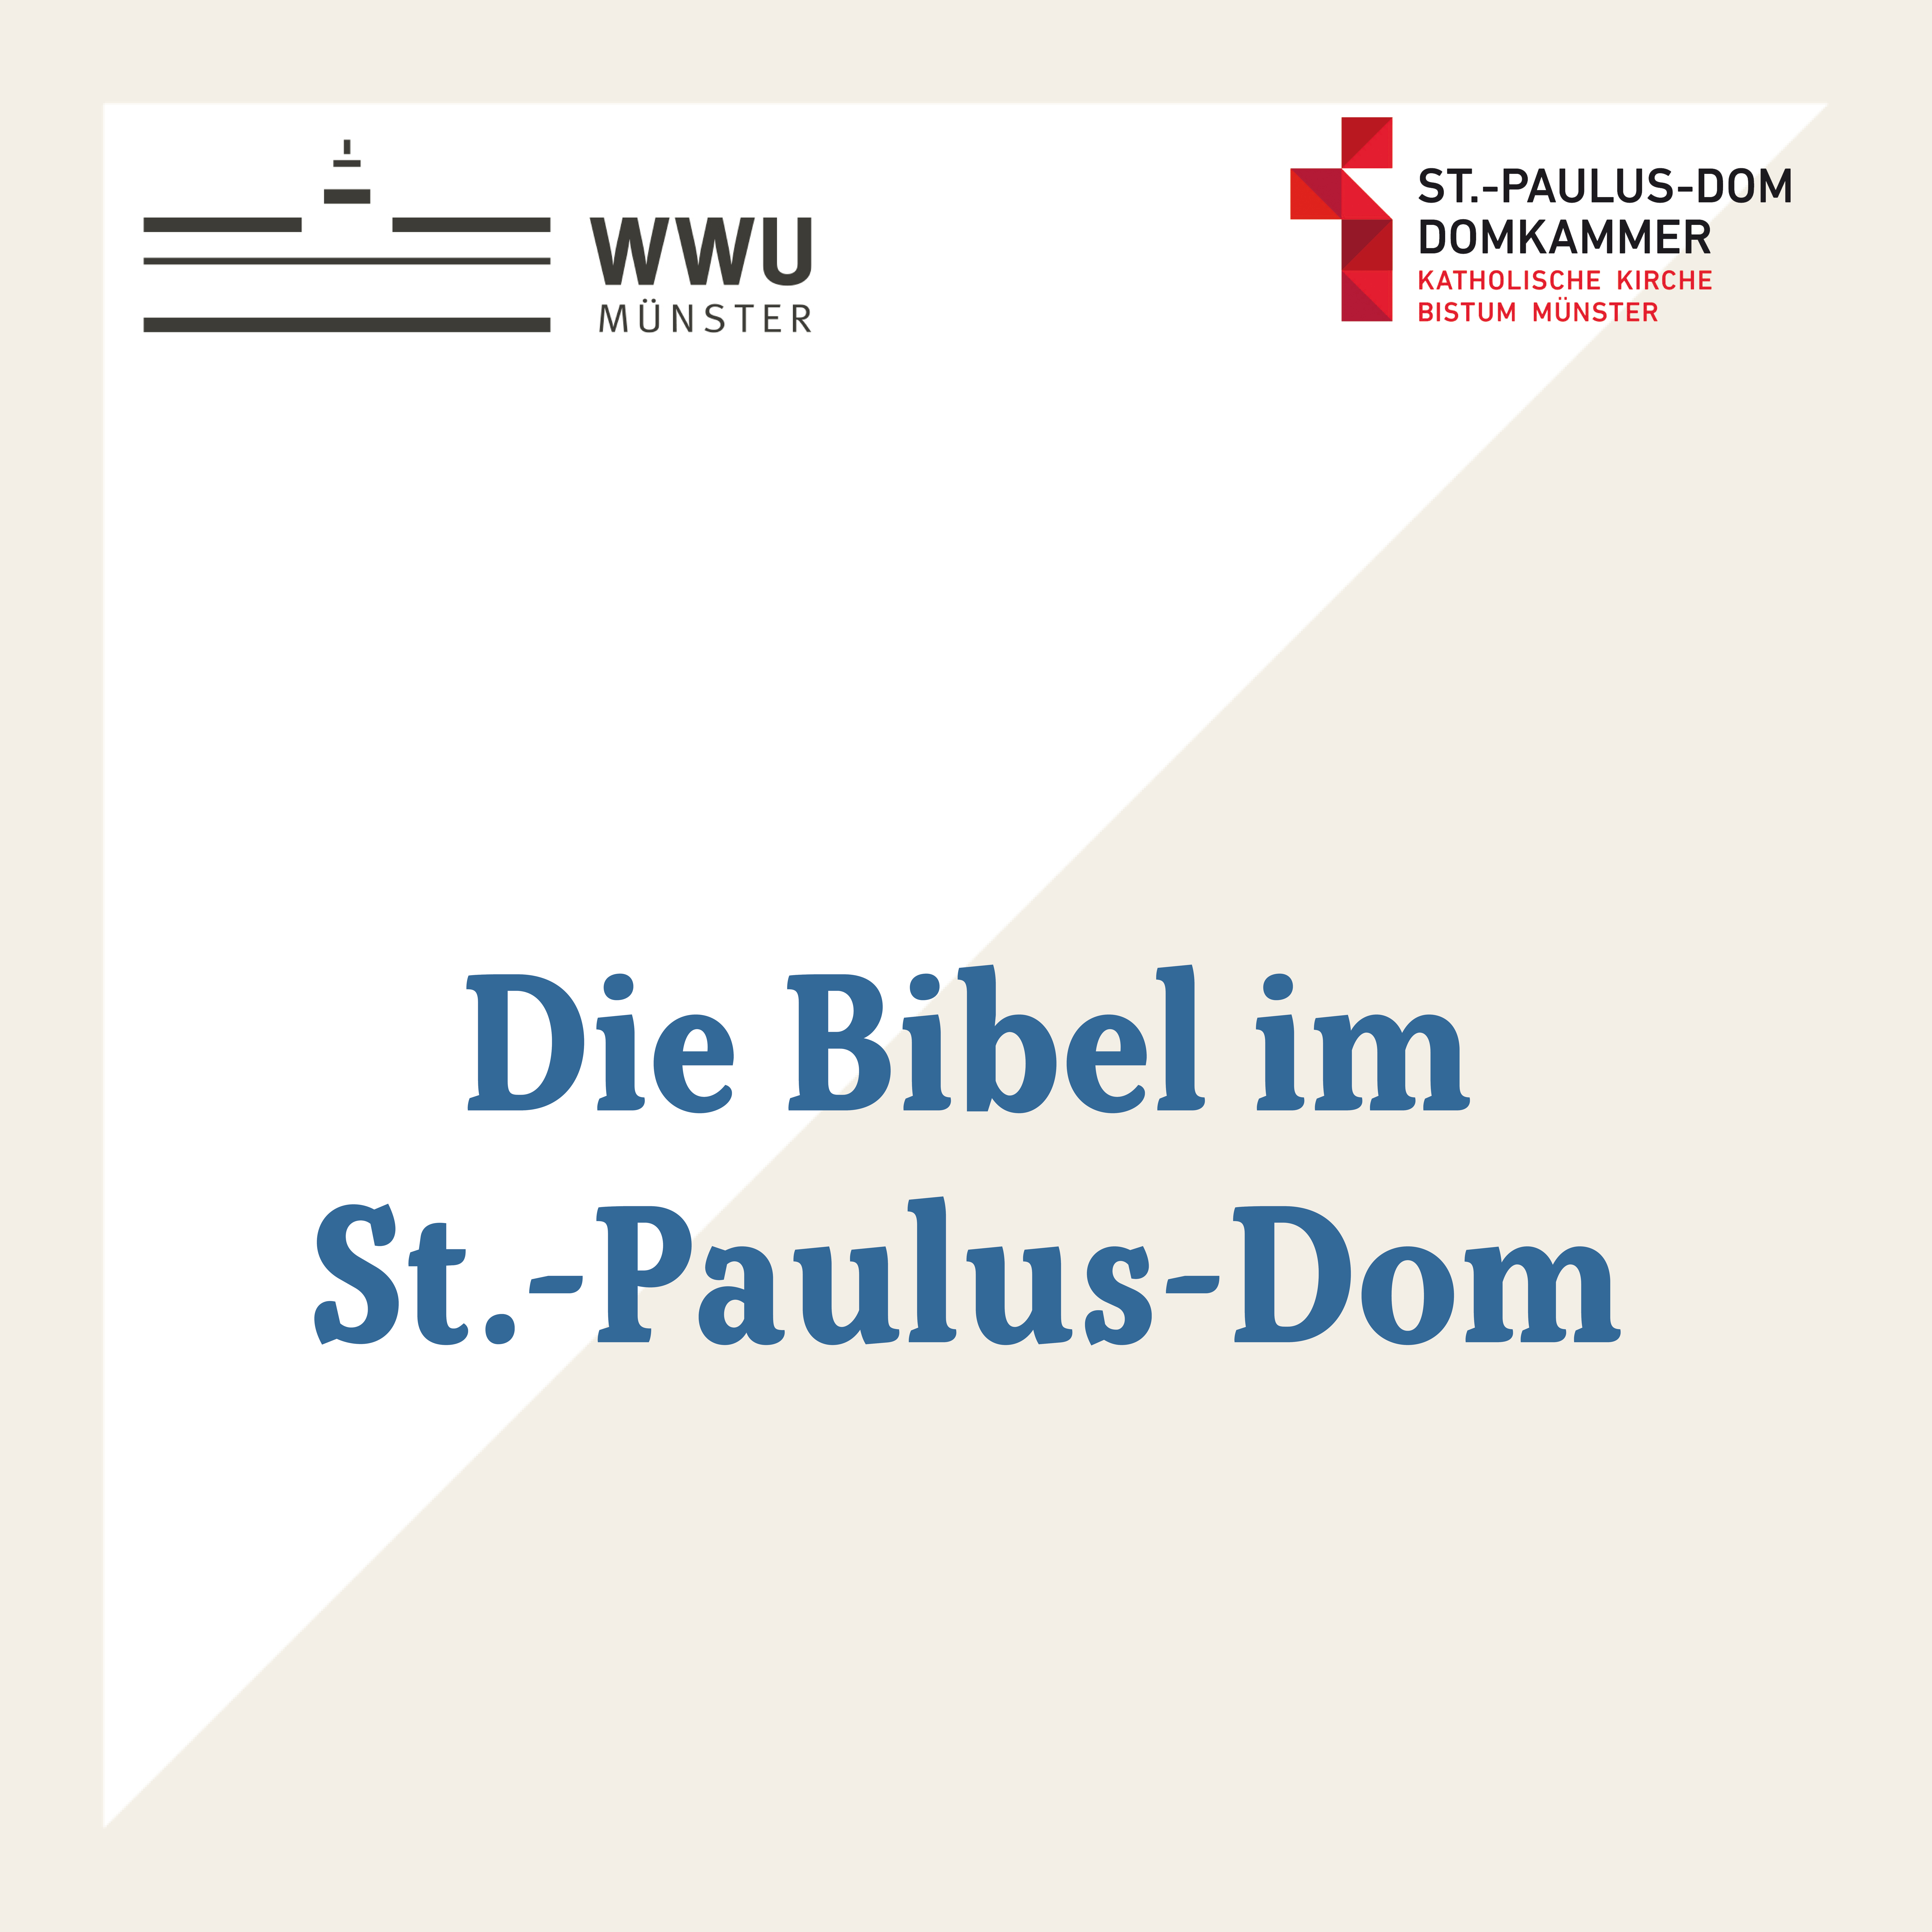 Bibl im St. Paulus-Dom